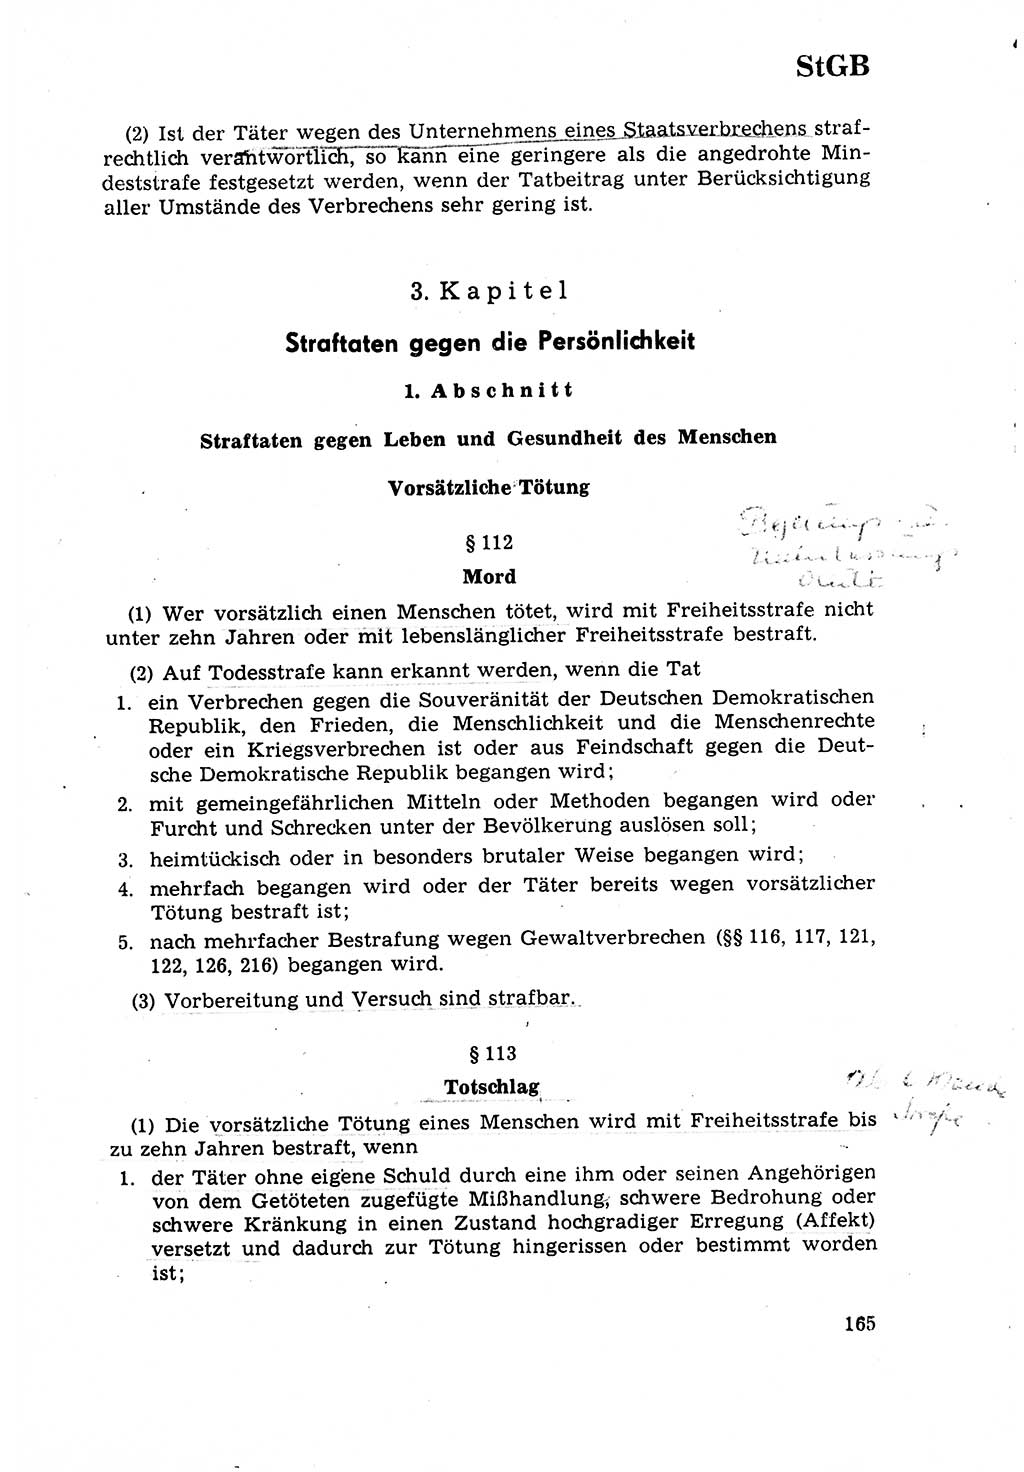 Strafrecht [Deutsche Demokratische Republik (DDR)] 1968, Seite 165 (Strafr. DDR 1968, S. 165)